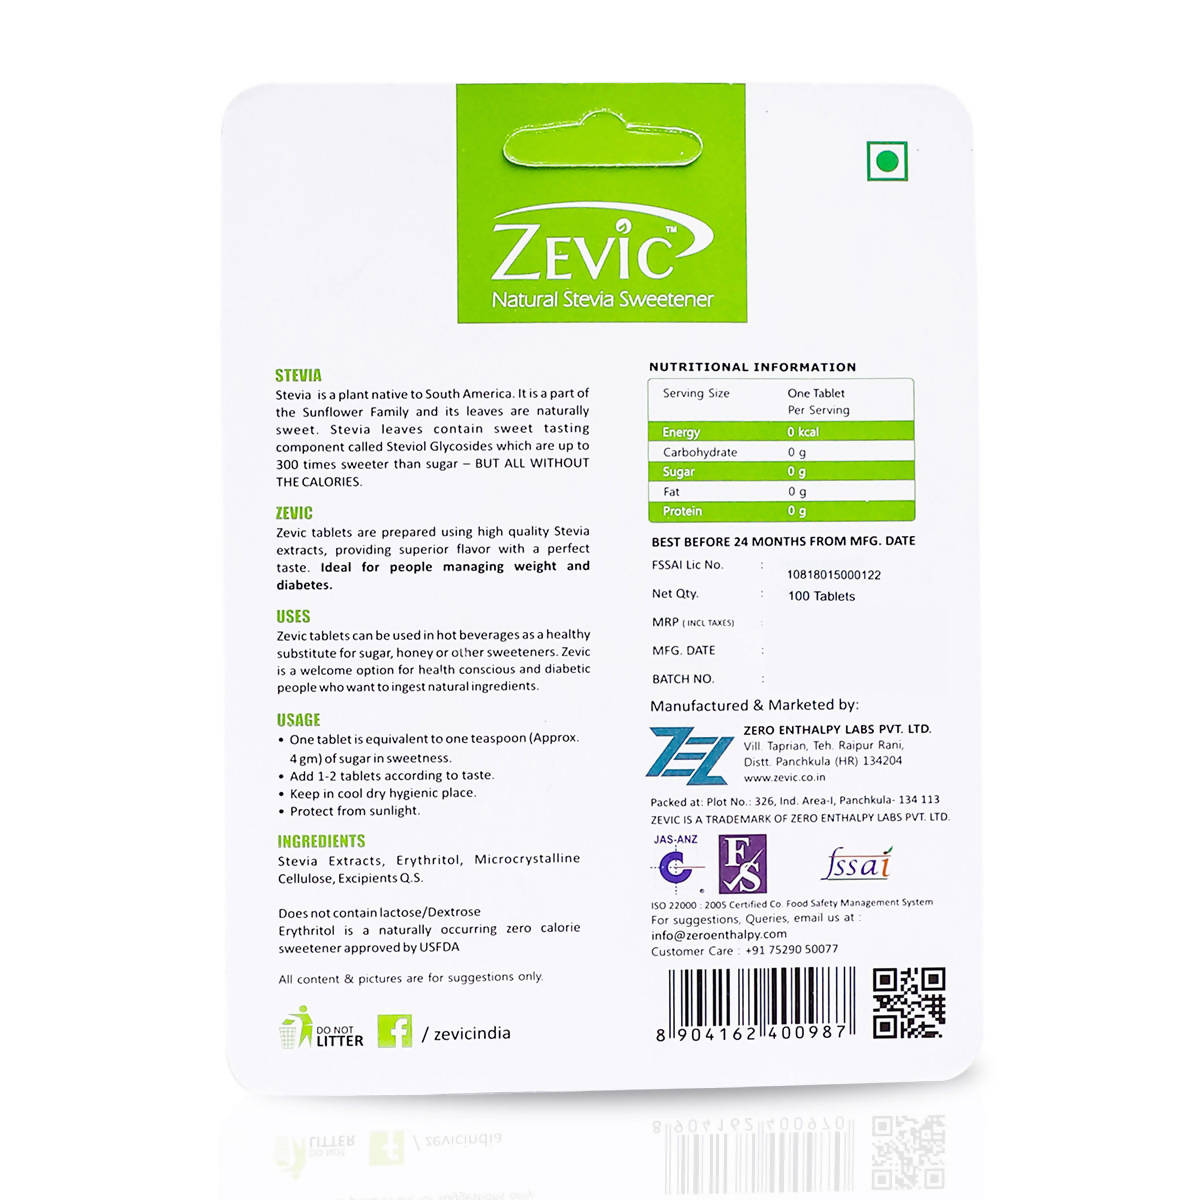 Zevic Stevia White Tablets